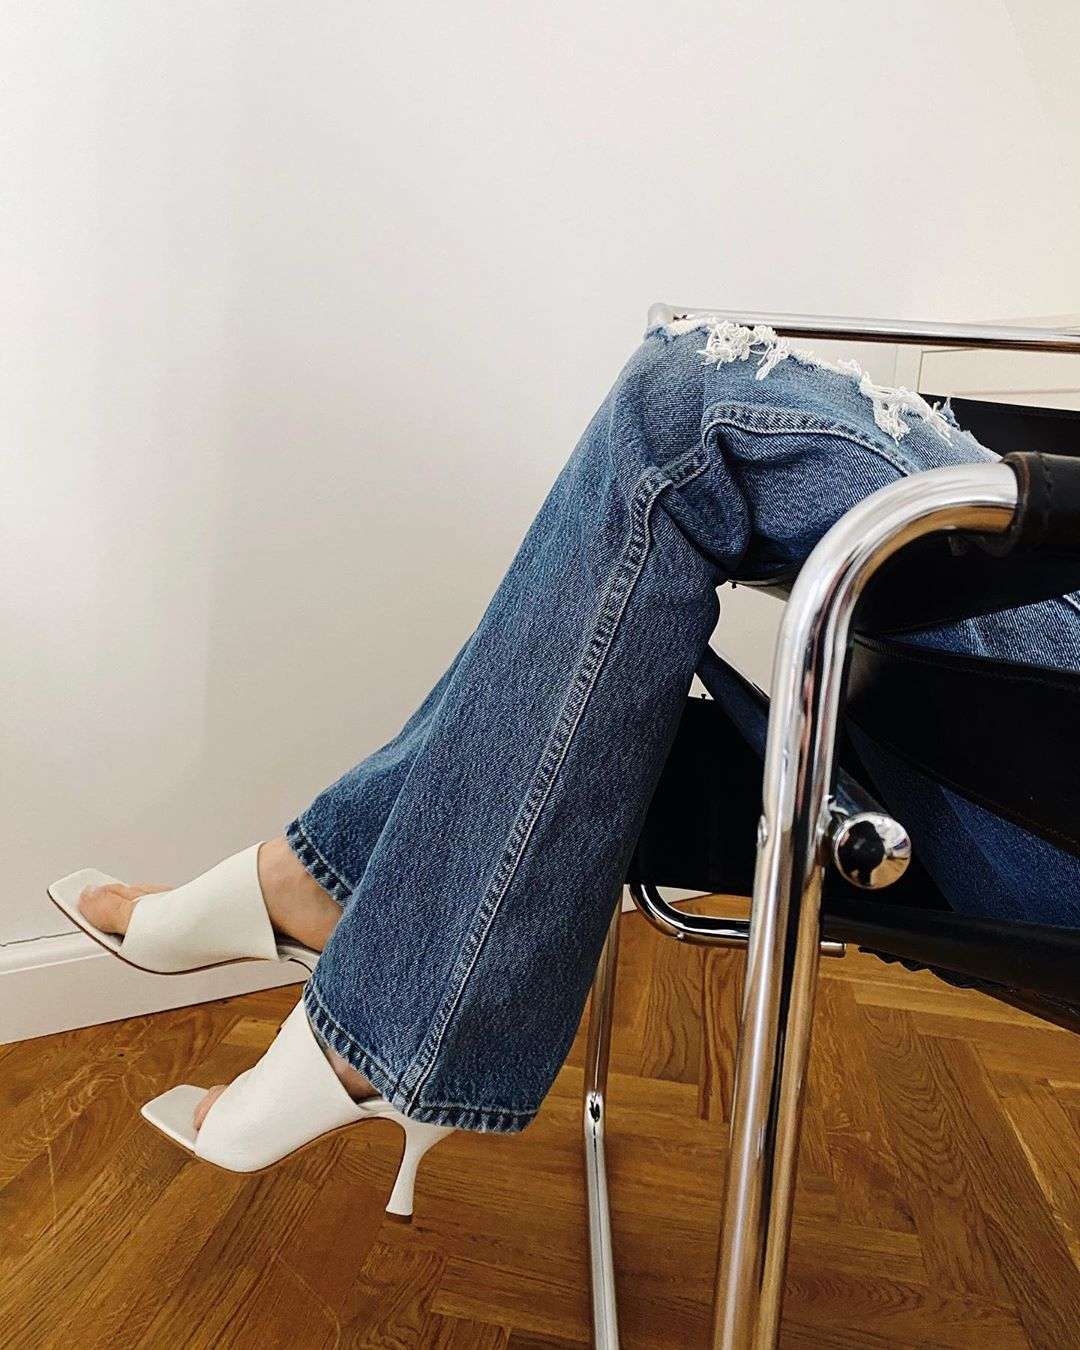 В моду возвращаются культовые джинсы 70-х - вот как их носить - фото 486669